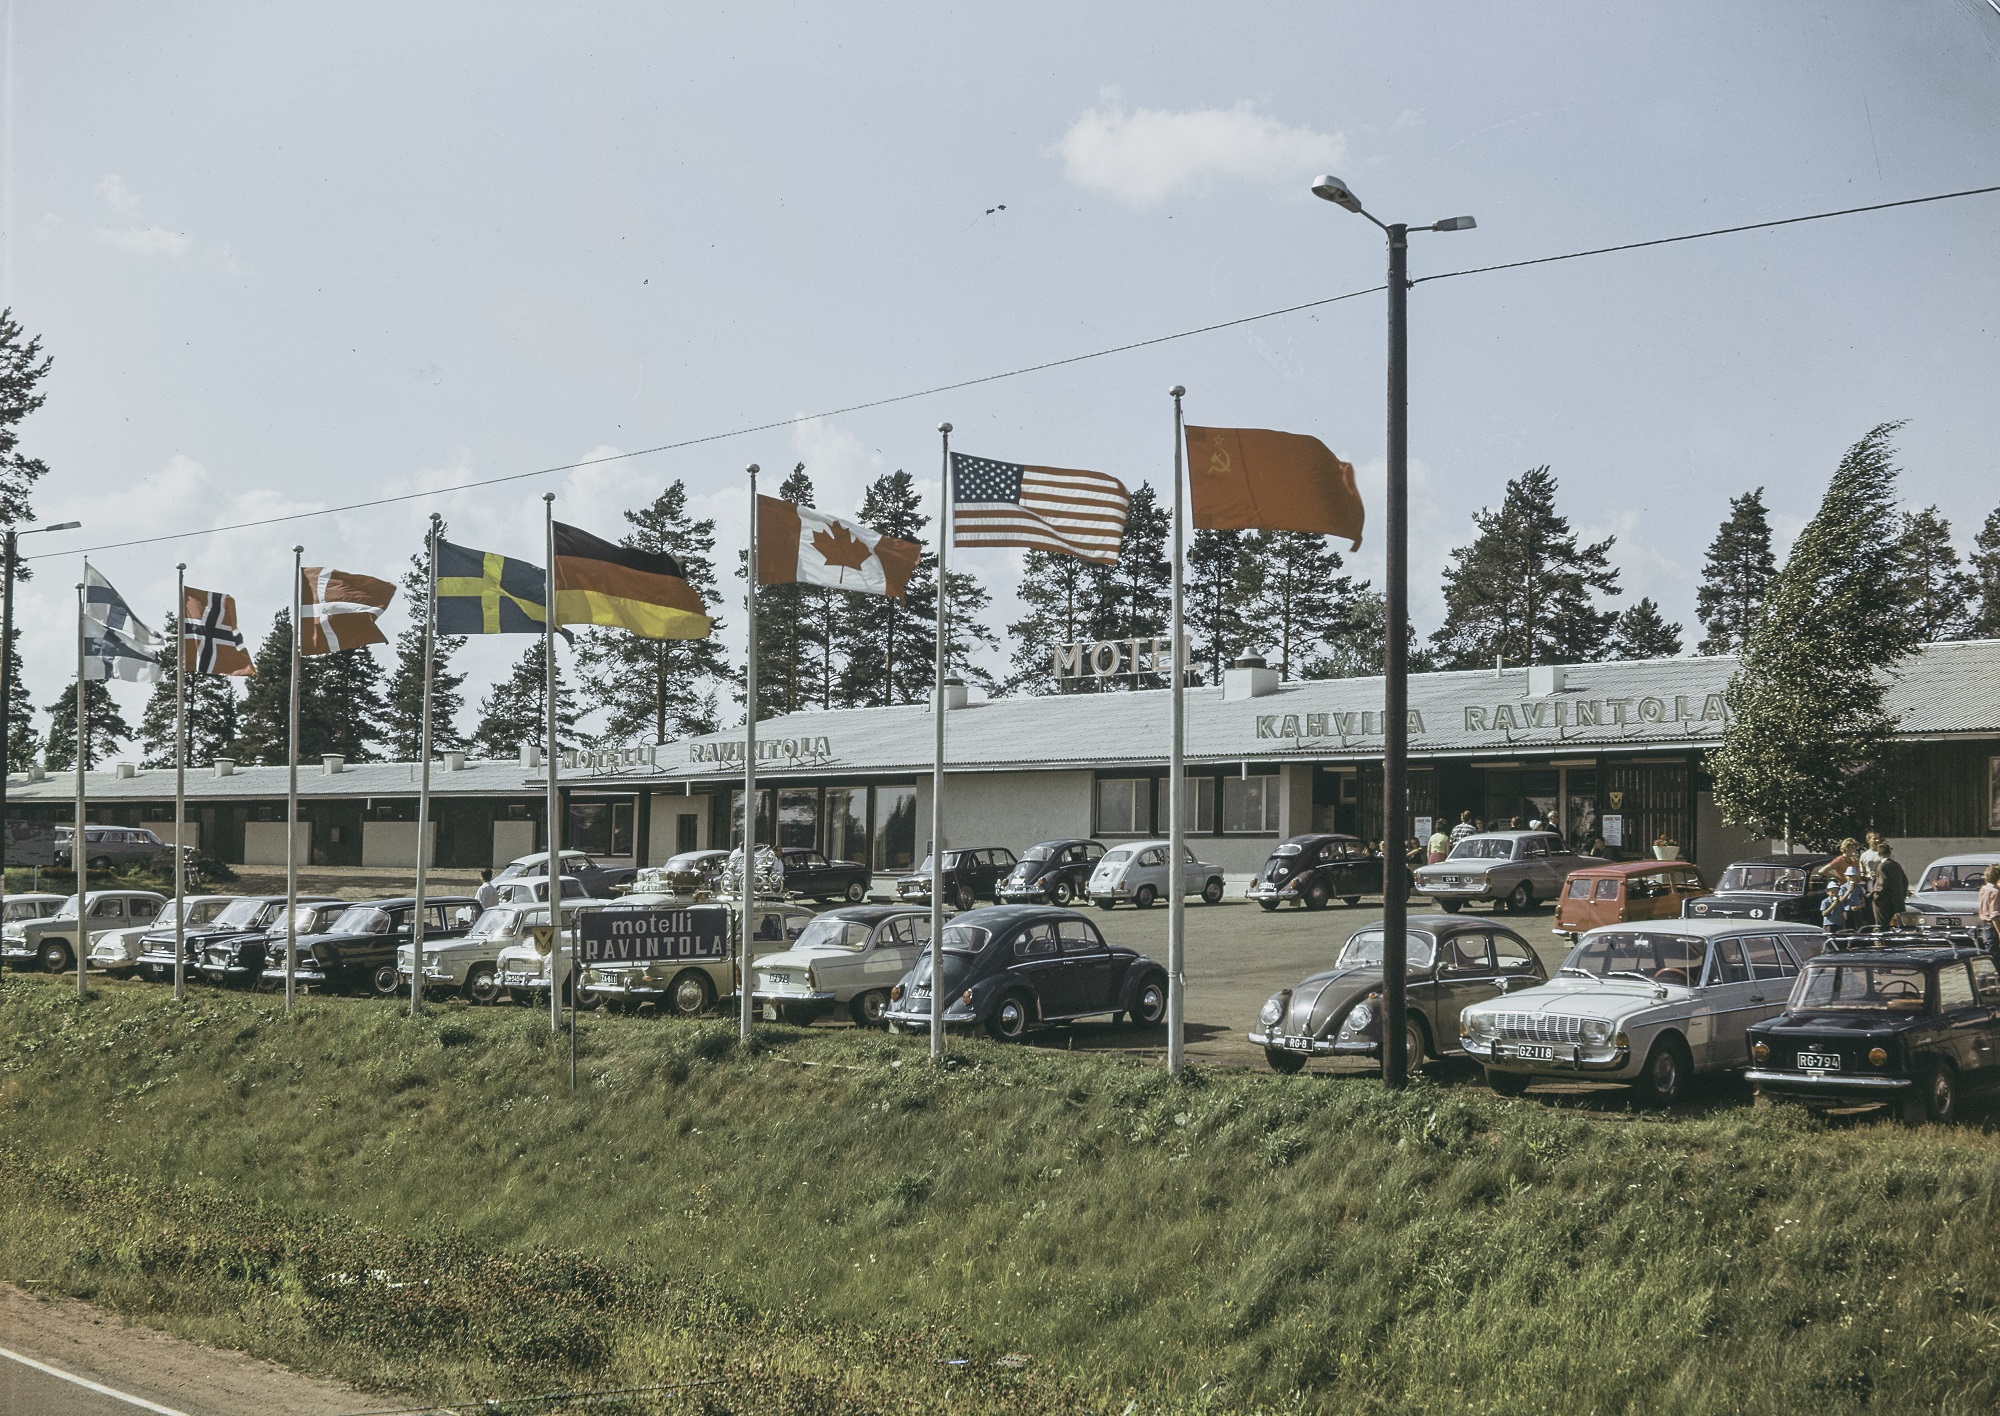 Näkymä motellialueelle. Etualalla nurmipenkereen päällä on kahdeksan lipputankoa, jossa liehuu eri maiden lippuja. Niiden takana paikoitusalue, jossa on pysäköitynä lukuisia henkilöautoja. Yksikerroksinen motellirakennus reunustaa parkkialuetta.